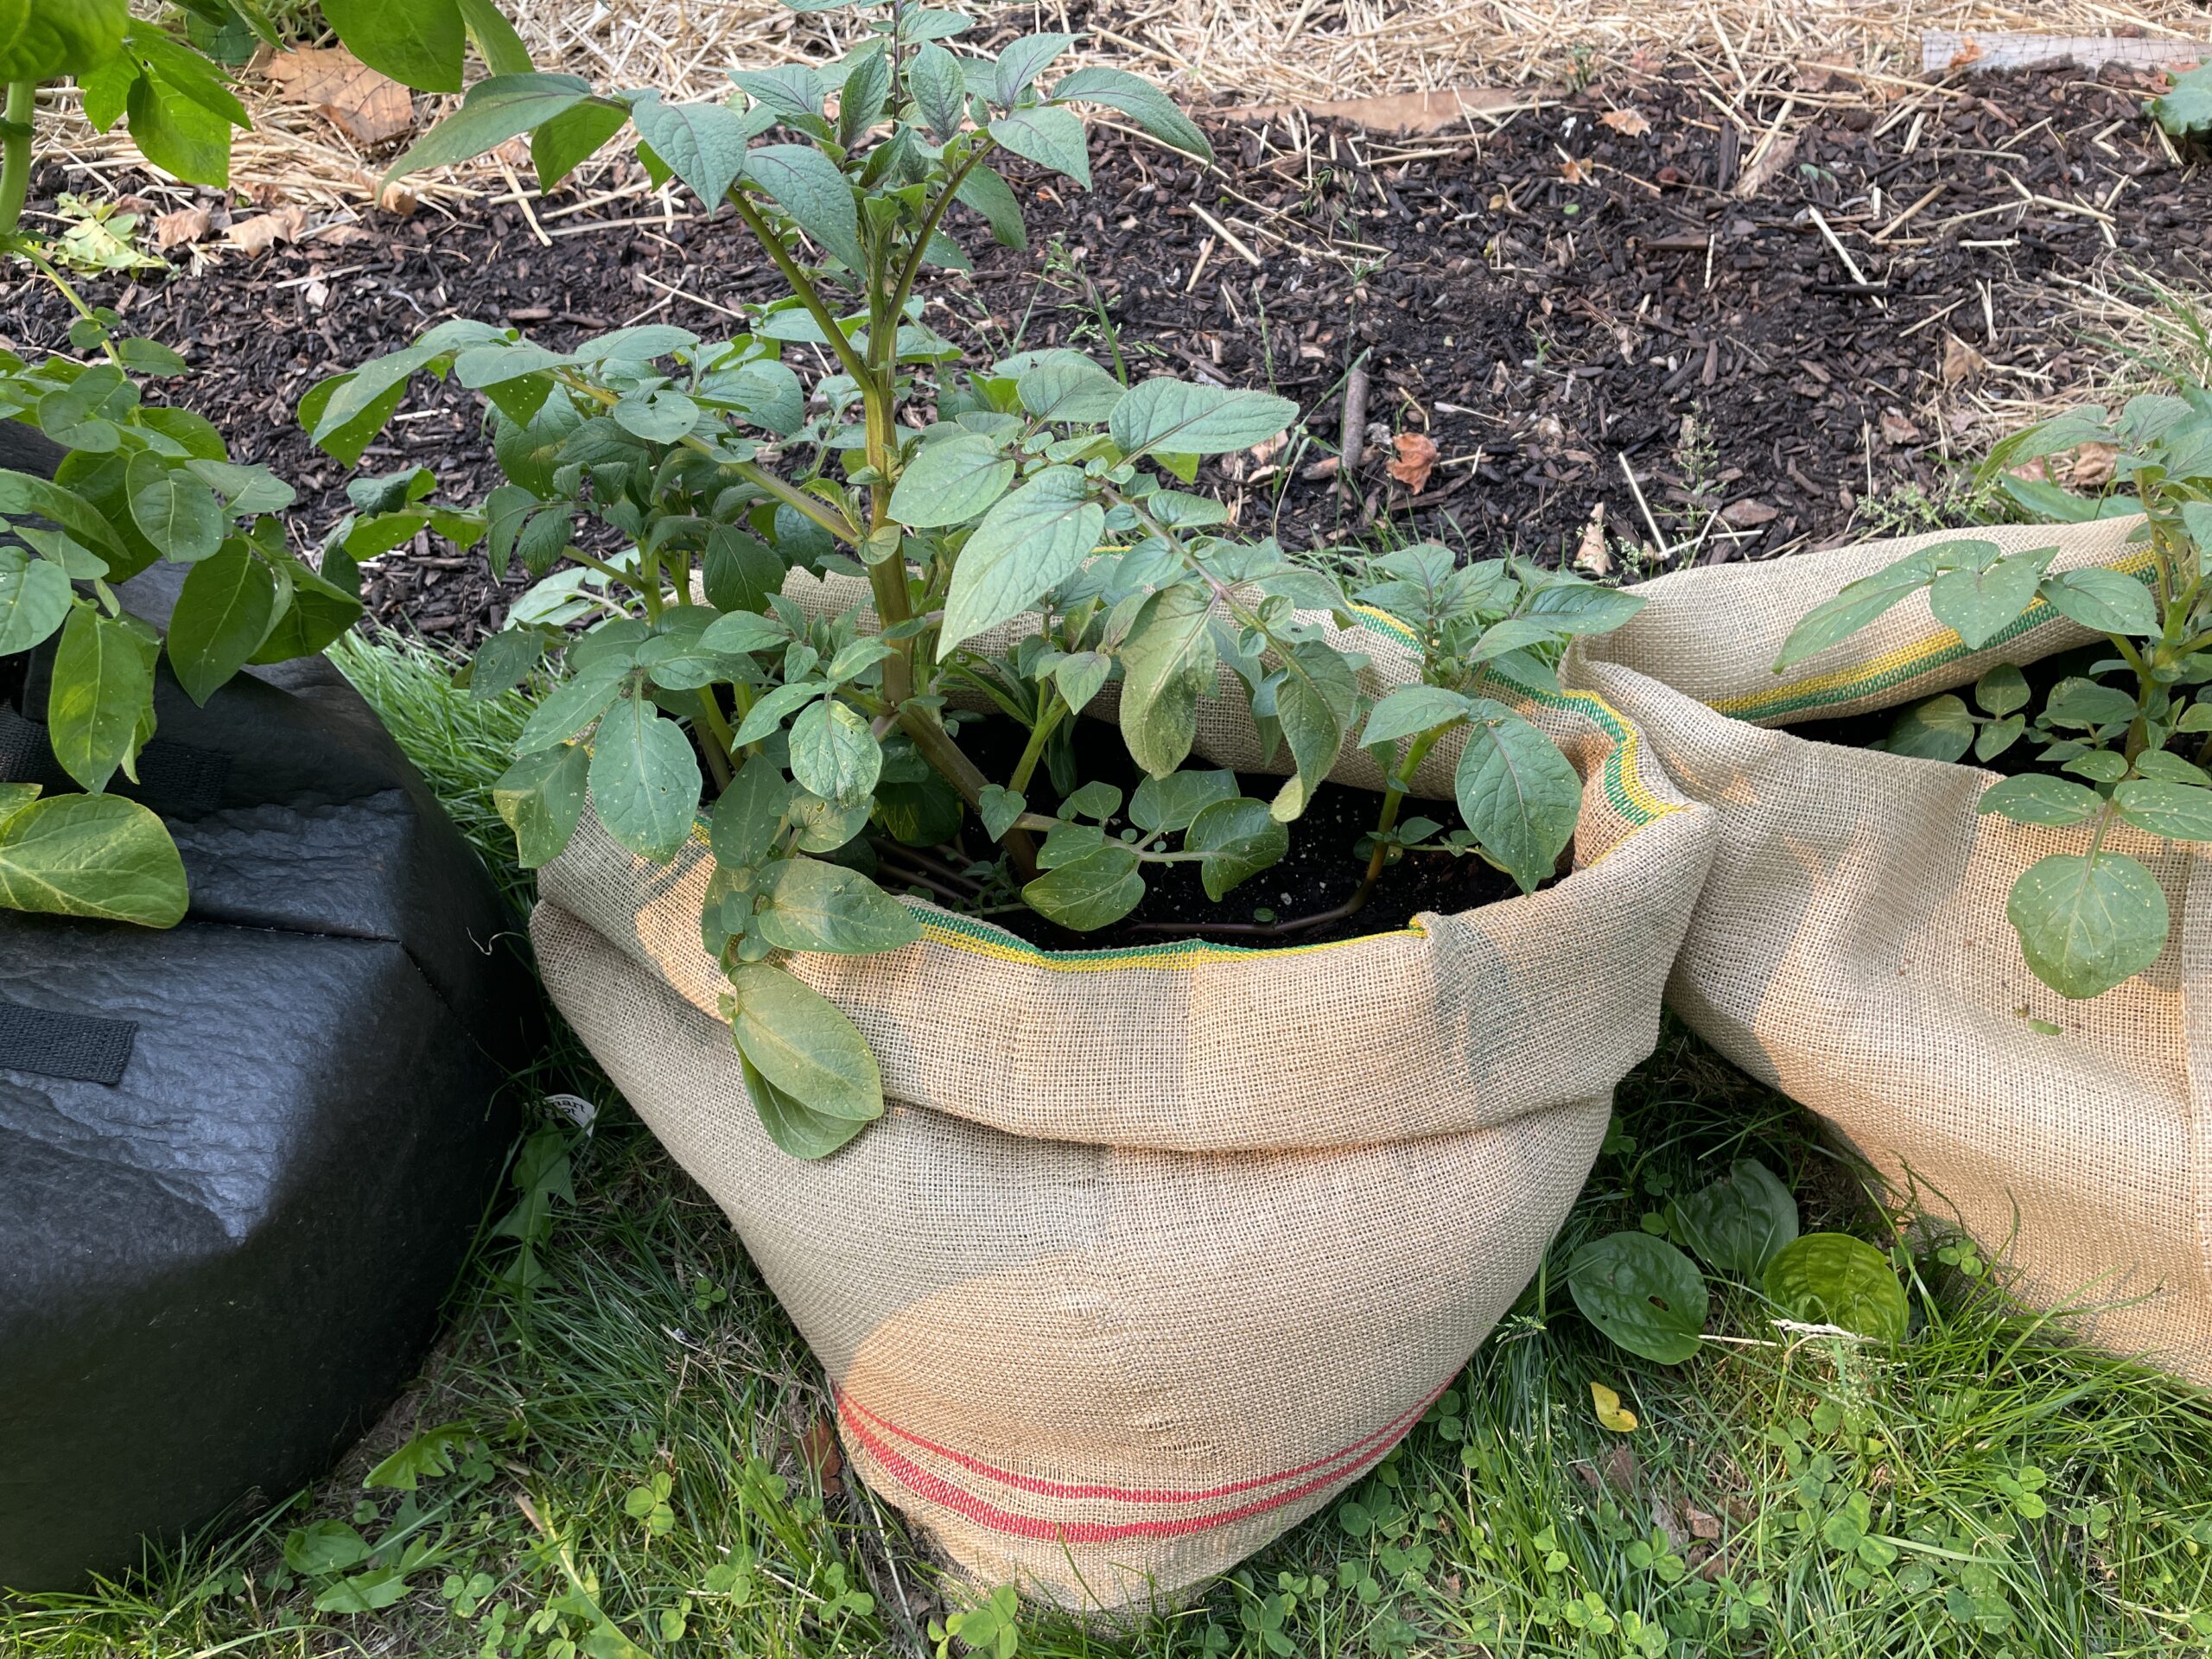 Gardener's Best Potato Grow Bag - Black : Target